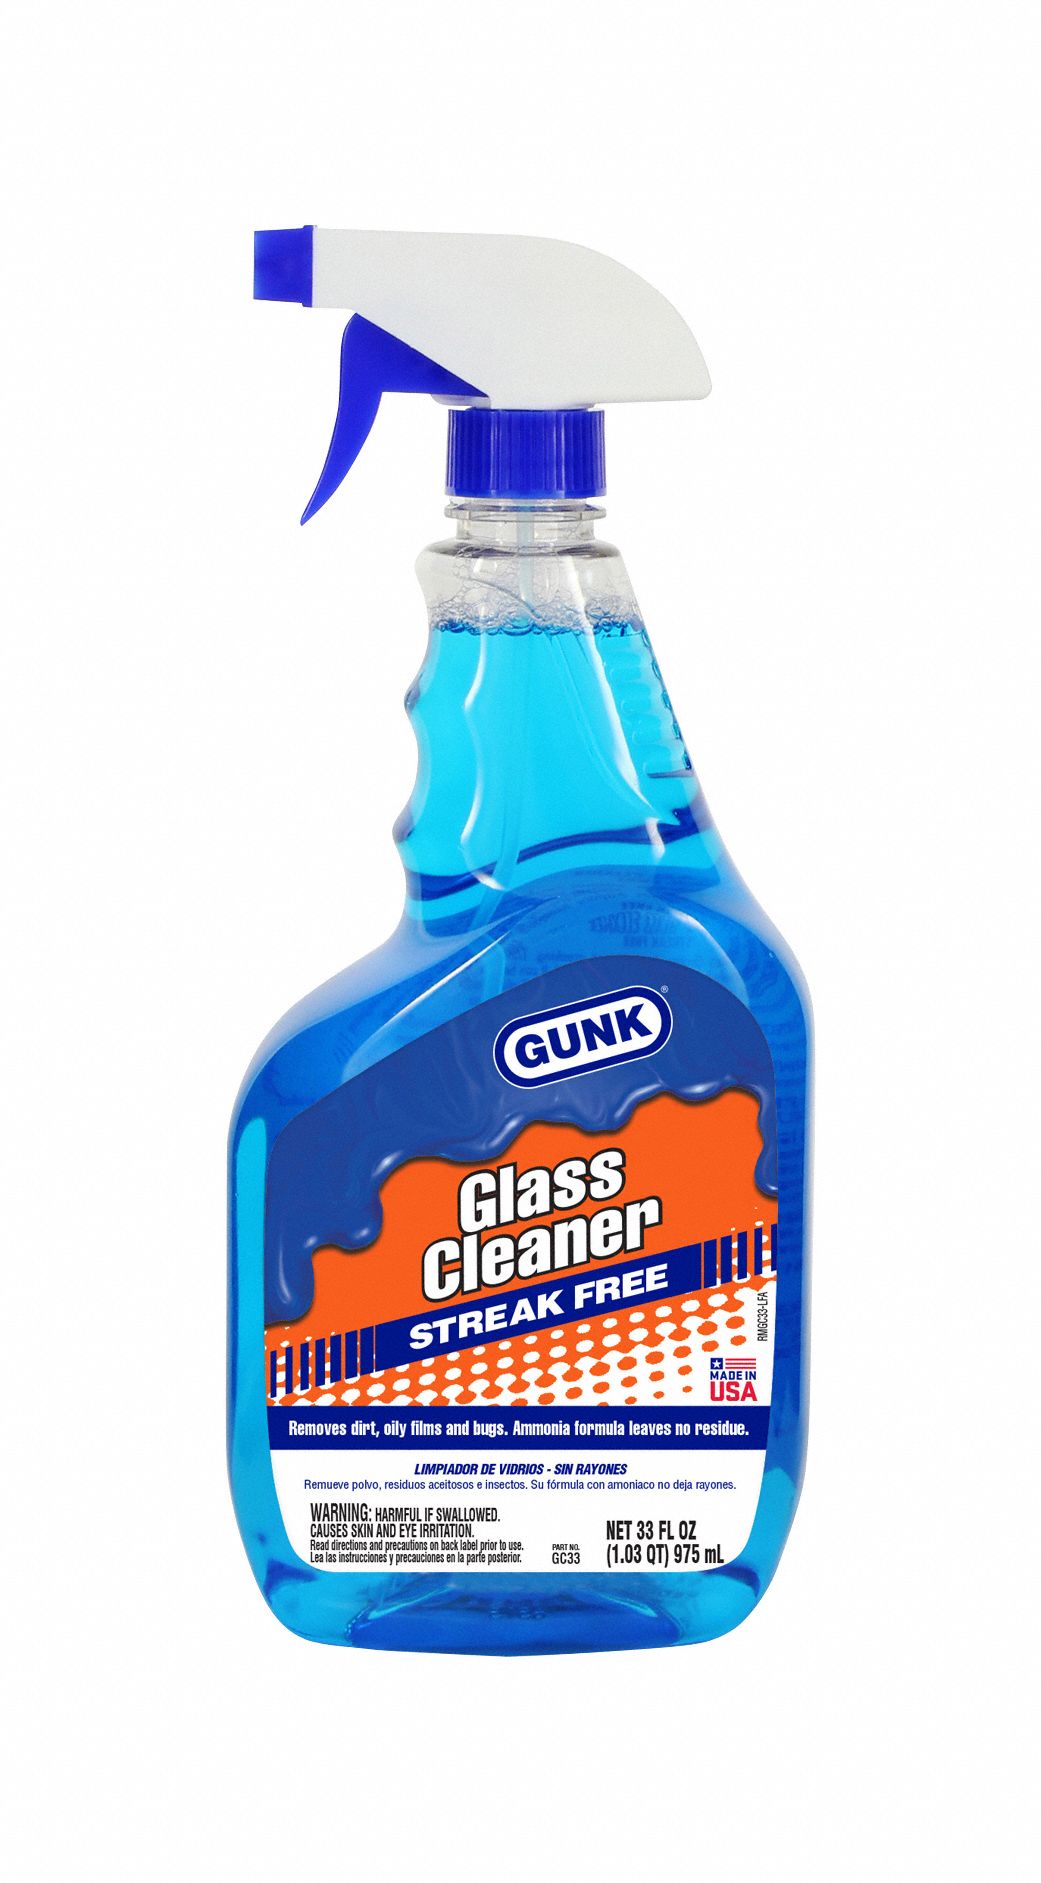 liquid cleaner